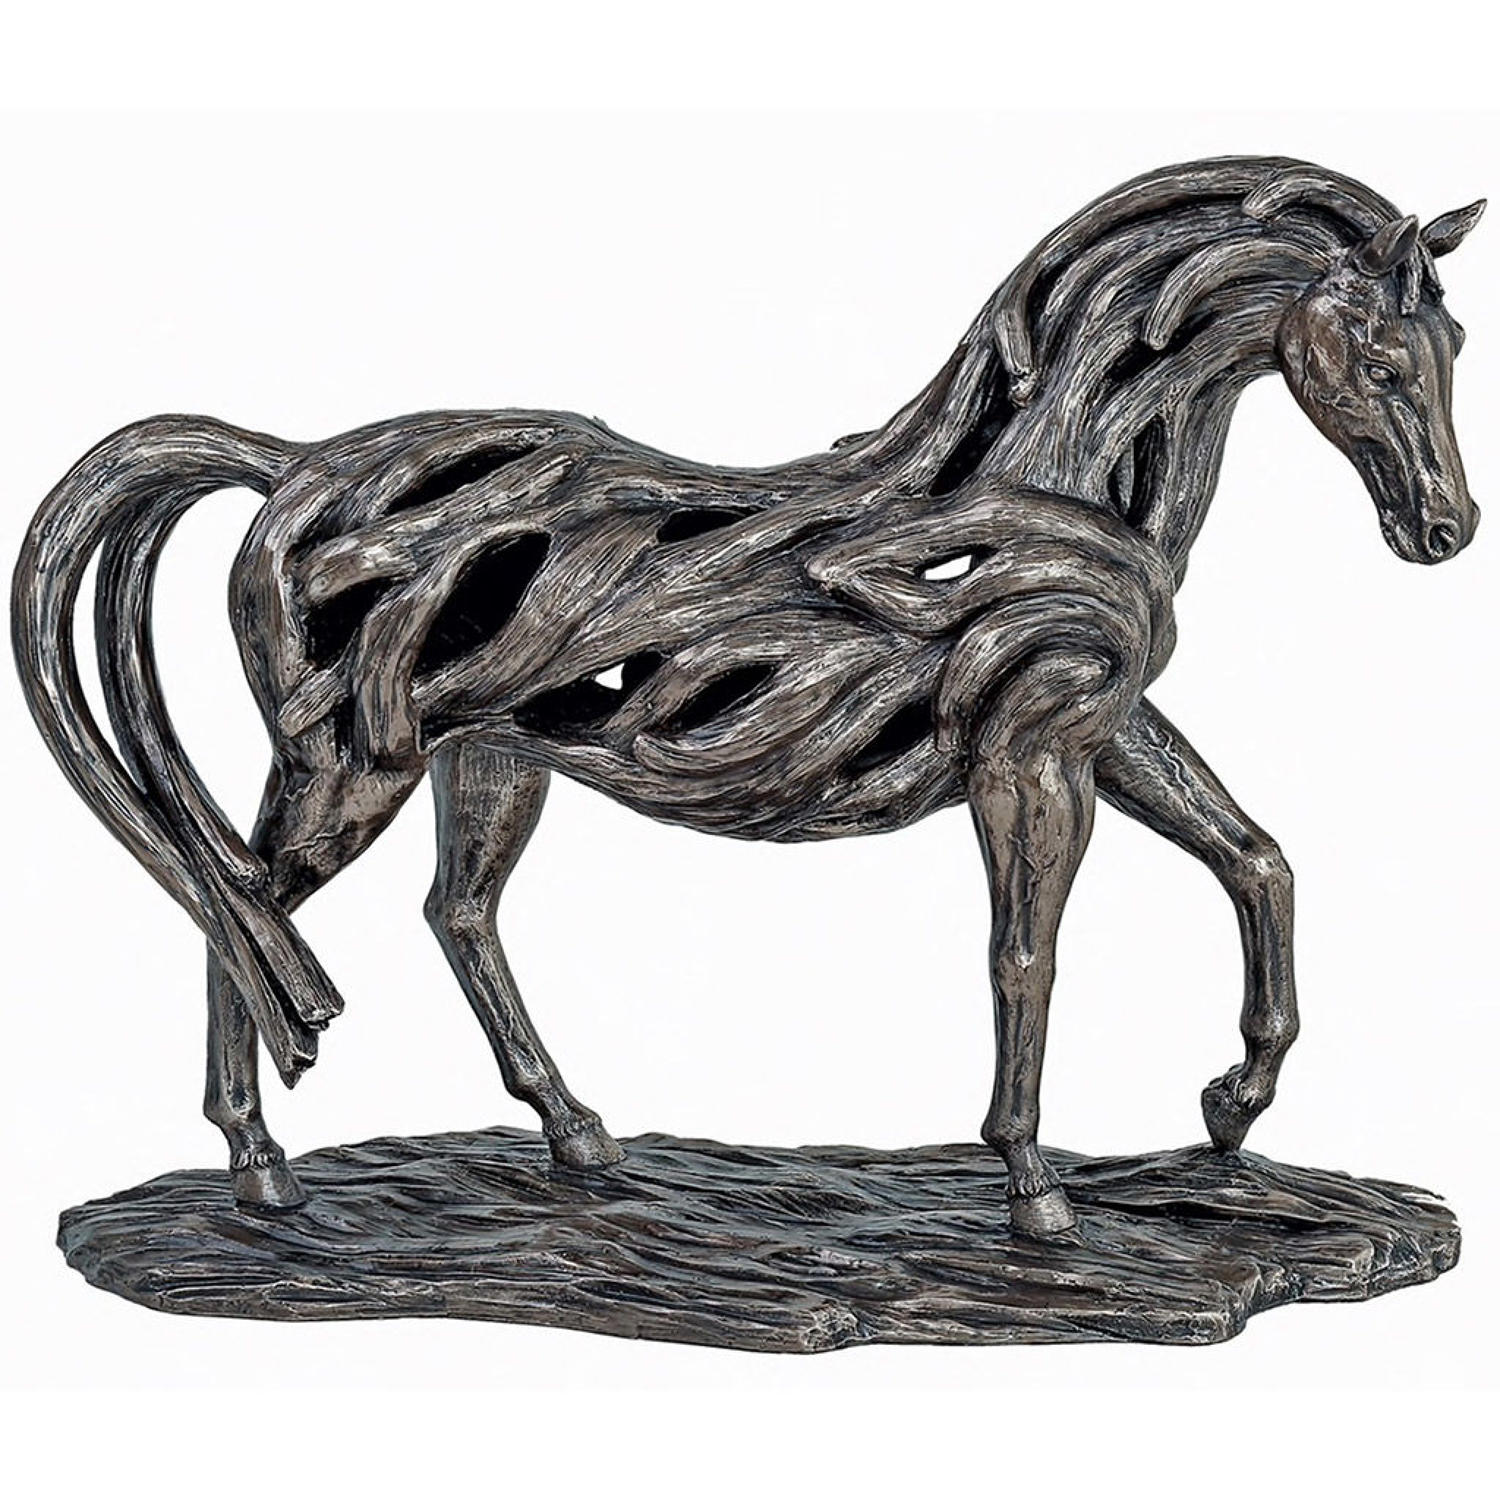 Trotting Horse cold cast bronze sculpture